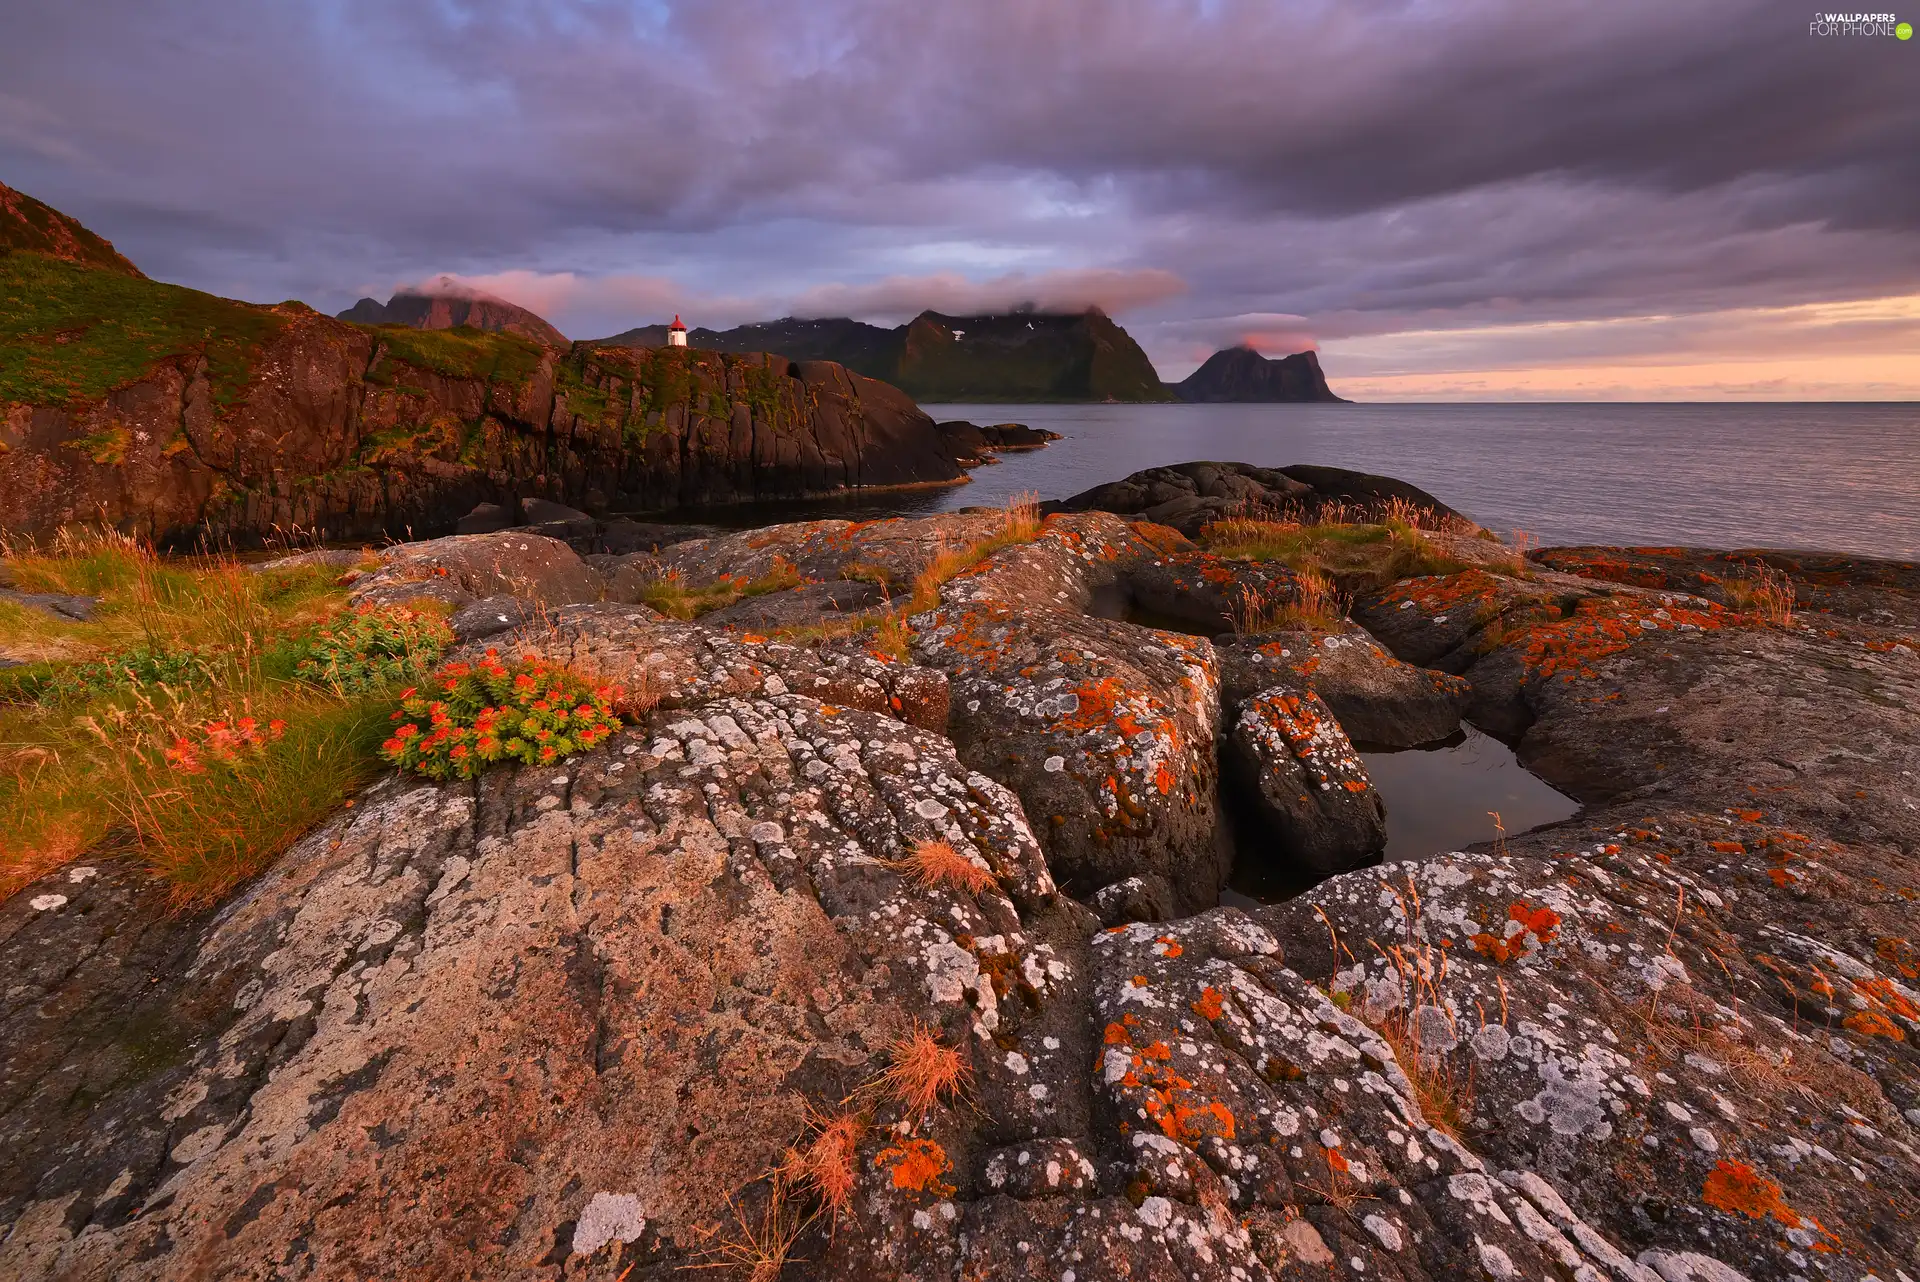 rocks, VEGETATION, Senja Island, North Sea, autumn, Lighthouse, Norway